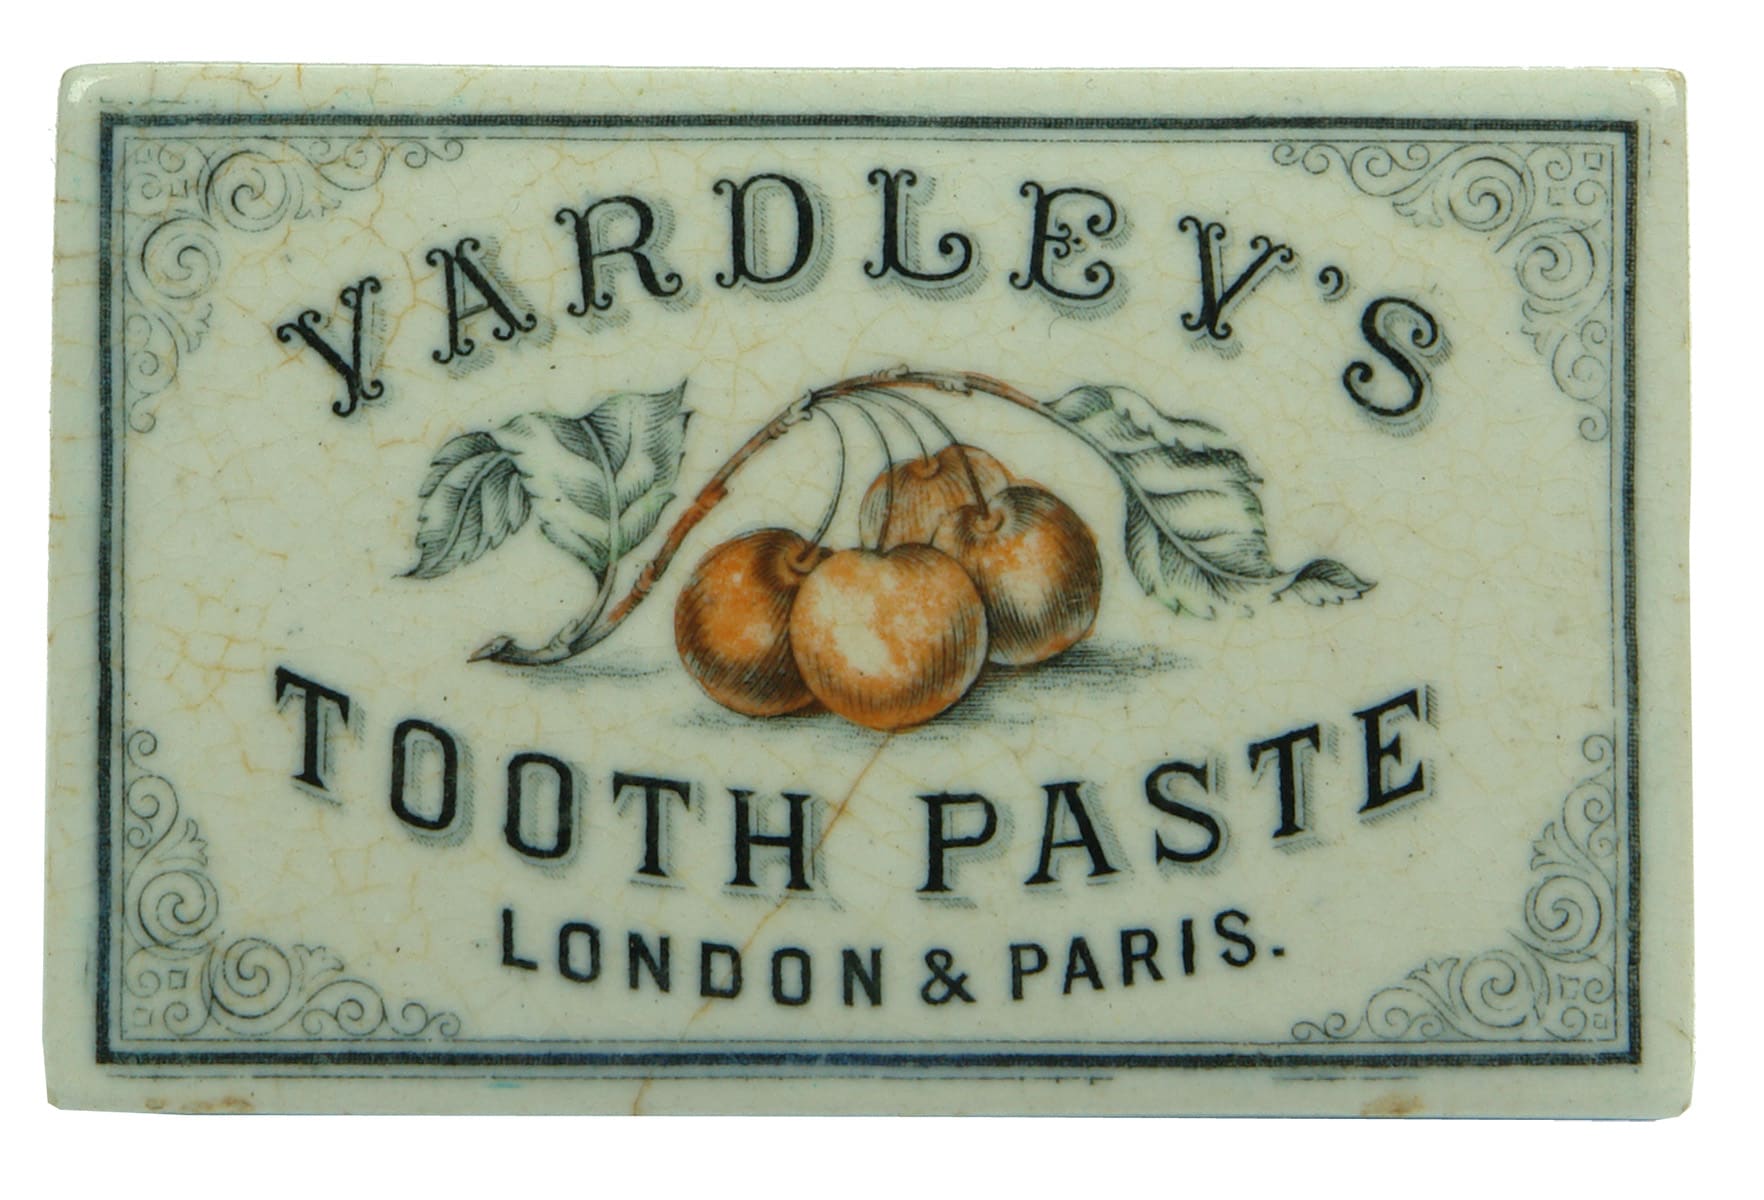 Yardley's Tooth Paste London Paris Pot Lid